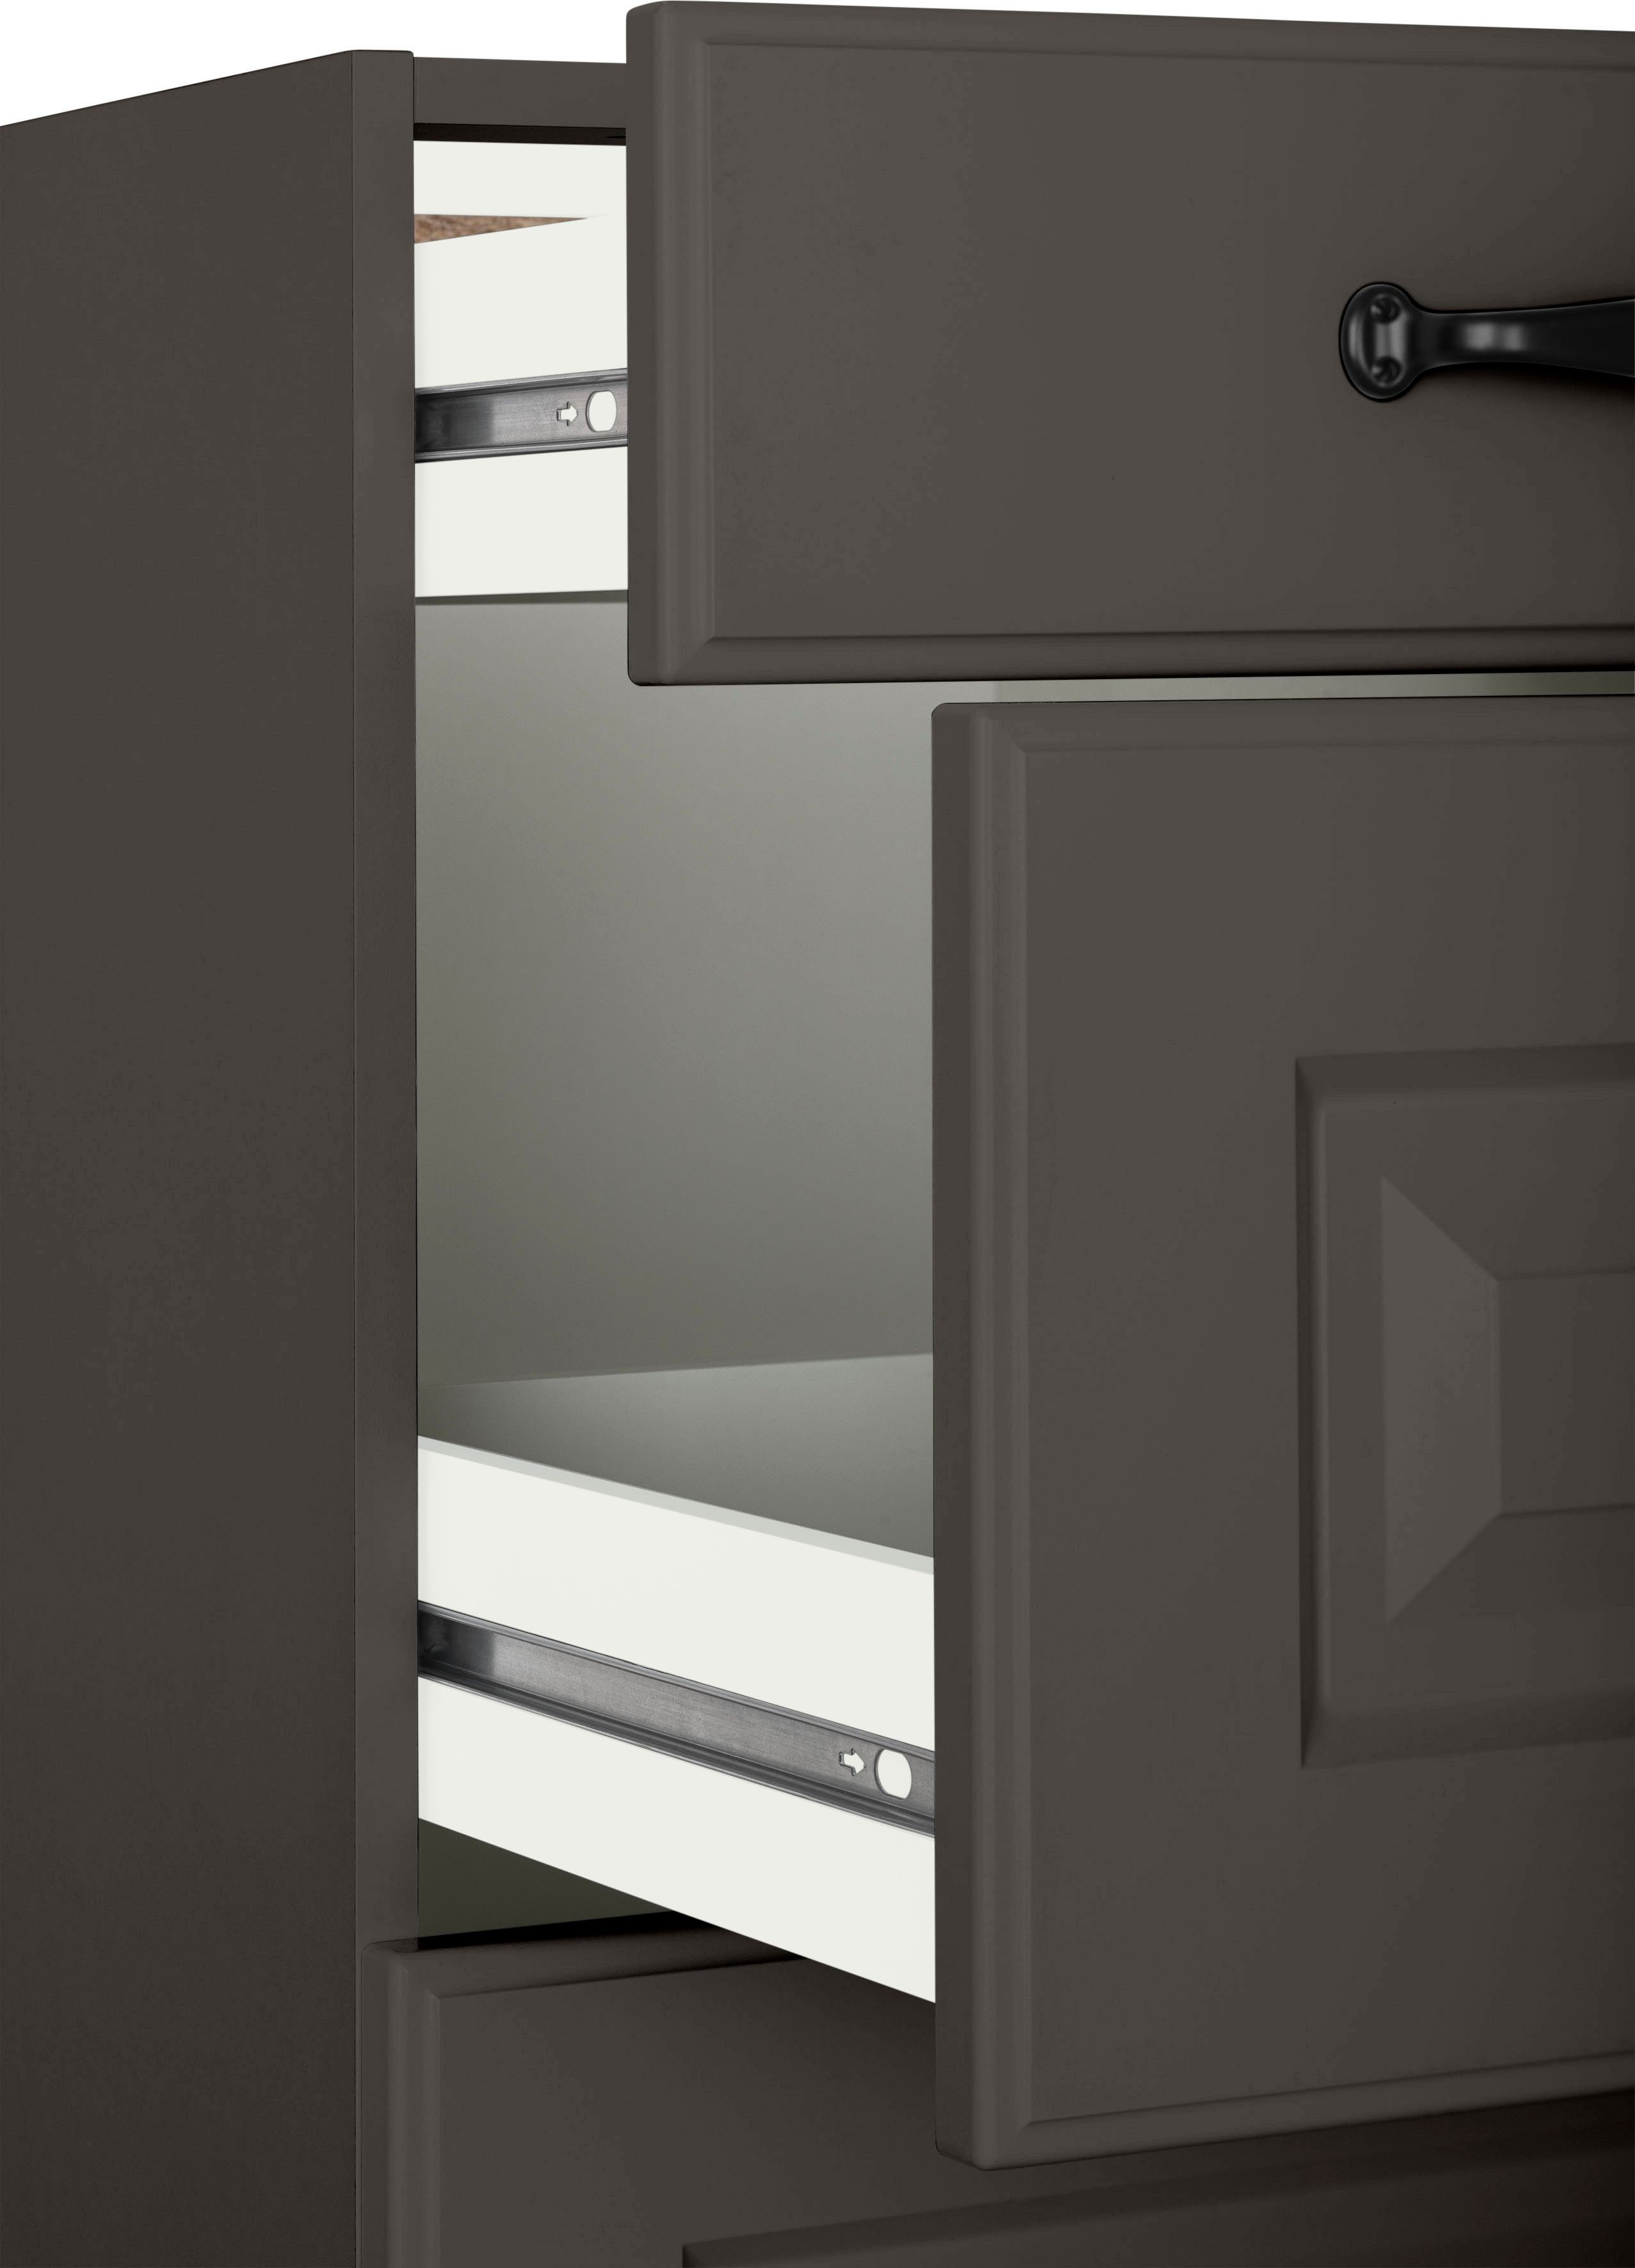 2 wiho Anthrazit Küchen Kassettenfront, | Erla Anthrazit/Anthrazit Arbeitsplatte mit Auszügen, breit Auszugsunterschrank 50 cm ohne großen